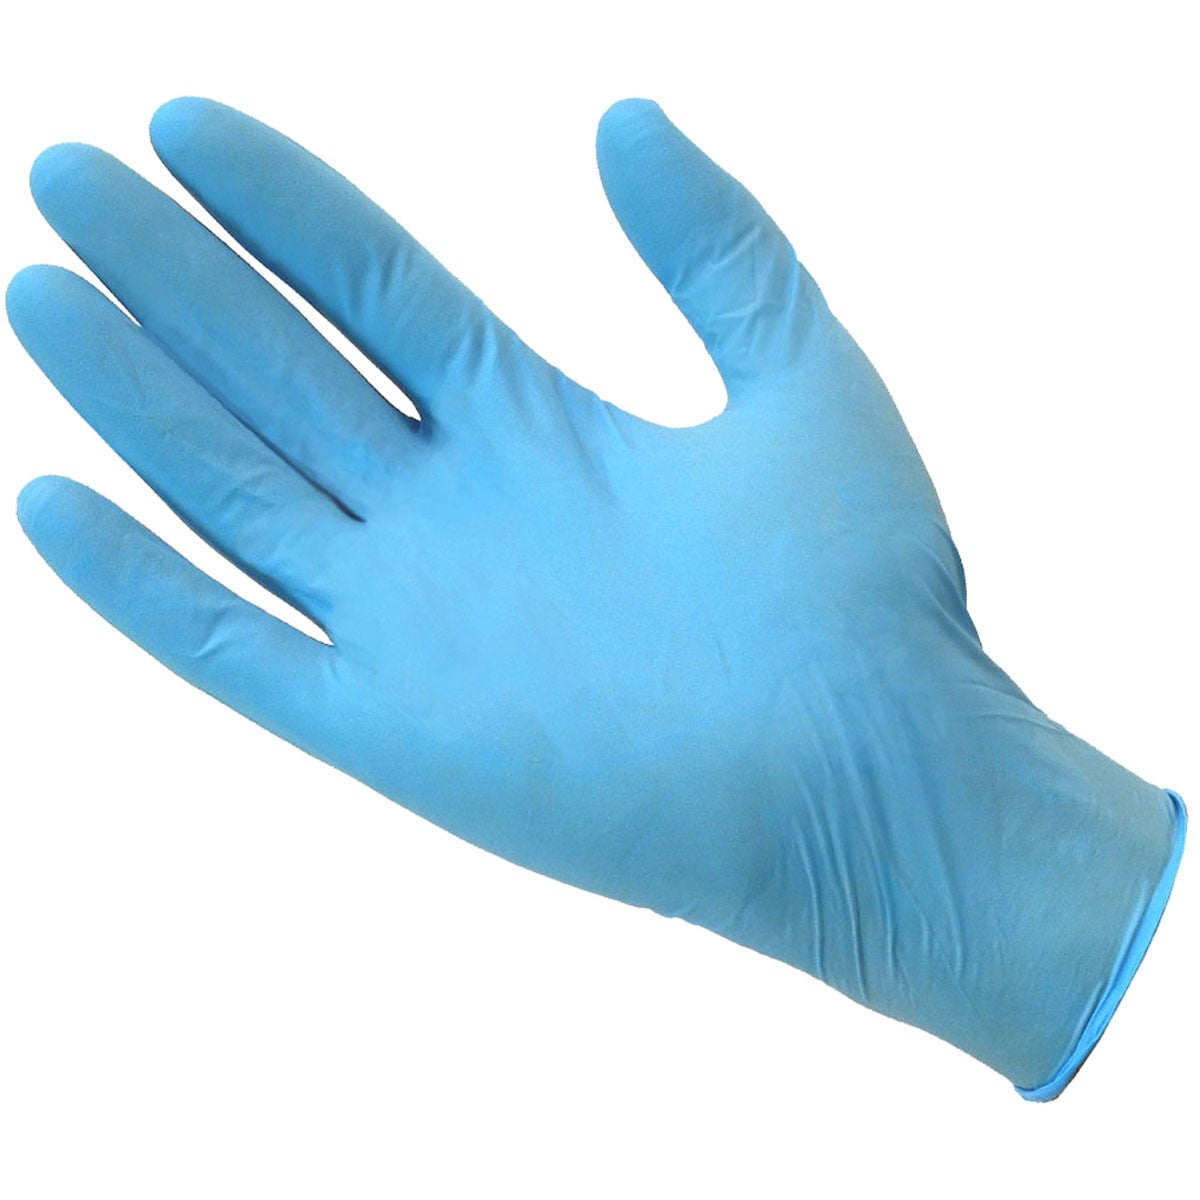 Купить медицинские латексные перчатки. Перчатки медицинские из латекса натурального каучука. Перчатки одноразовые голубые. Ректальная перчатка. Blue Nitrile Gloves for work.